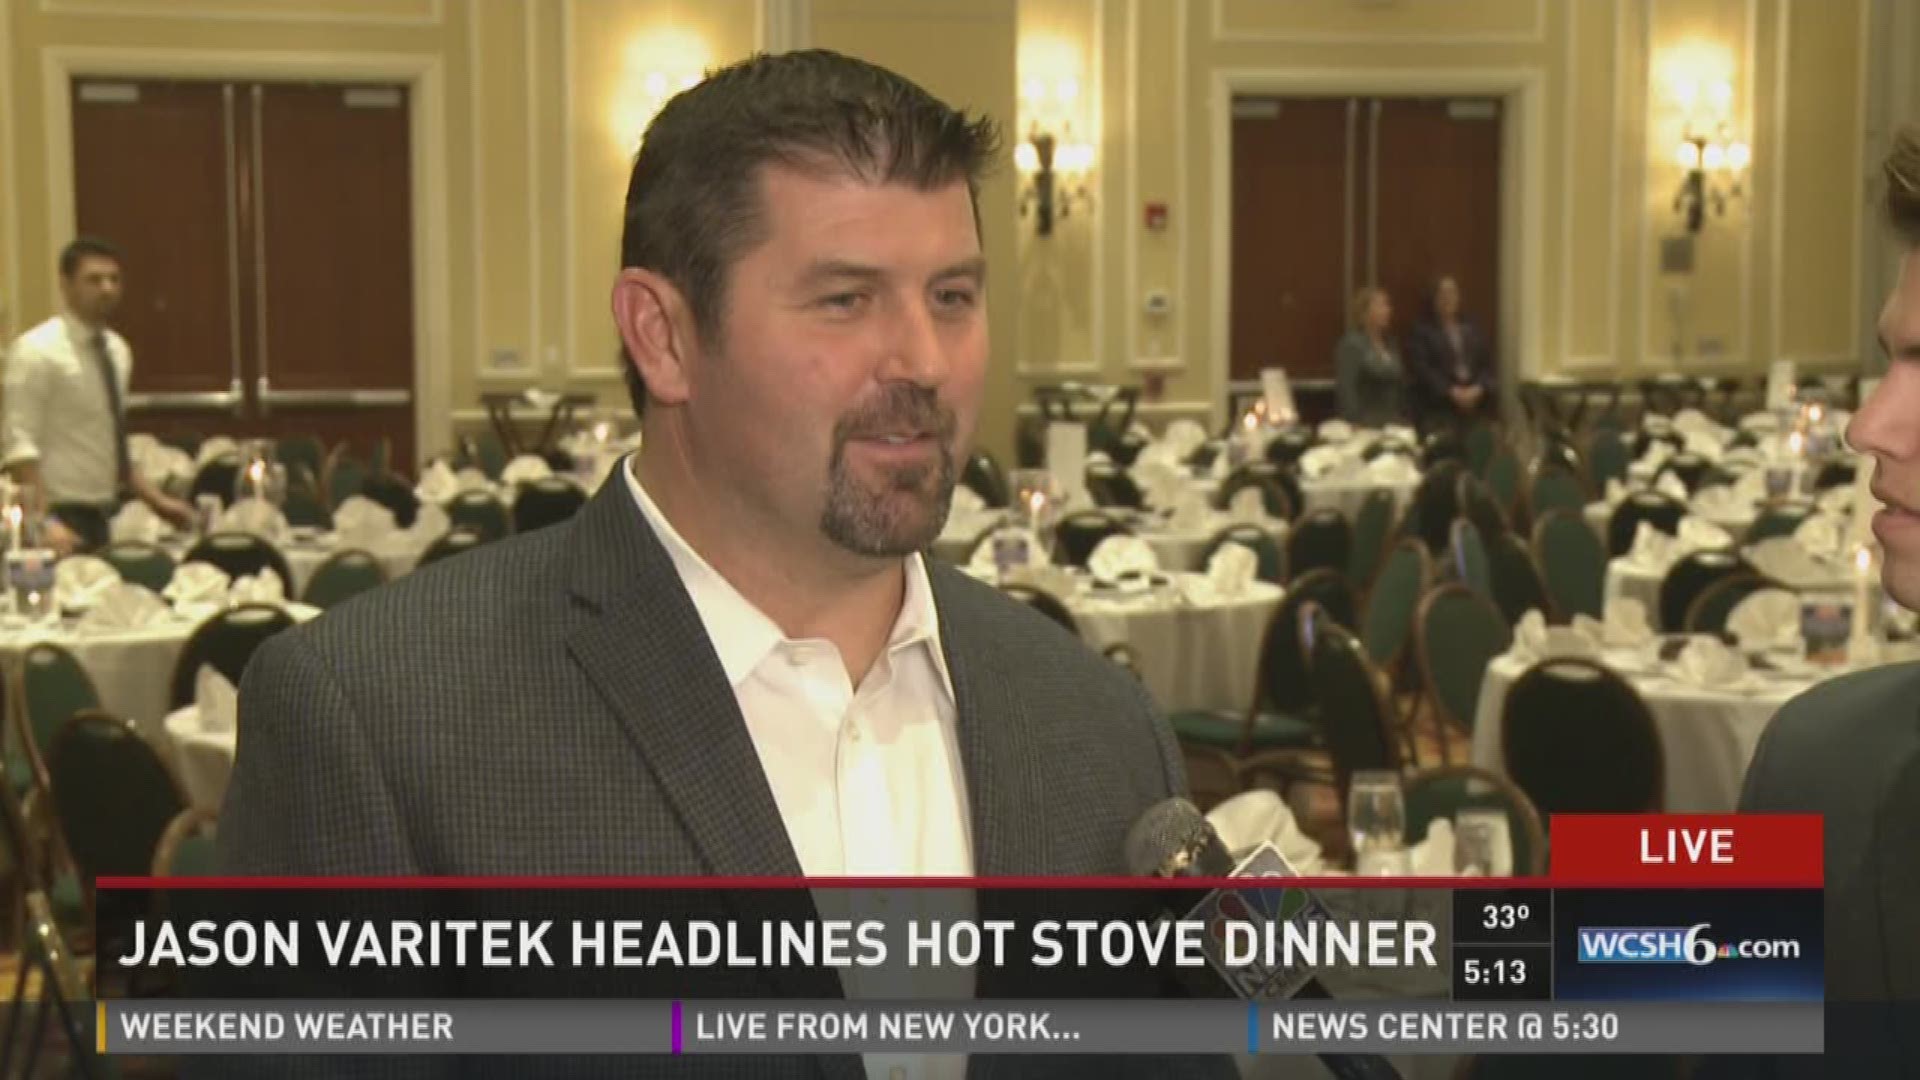 Jason Varitek headlines hot stove dinner